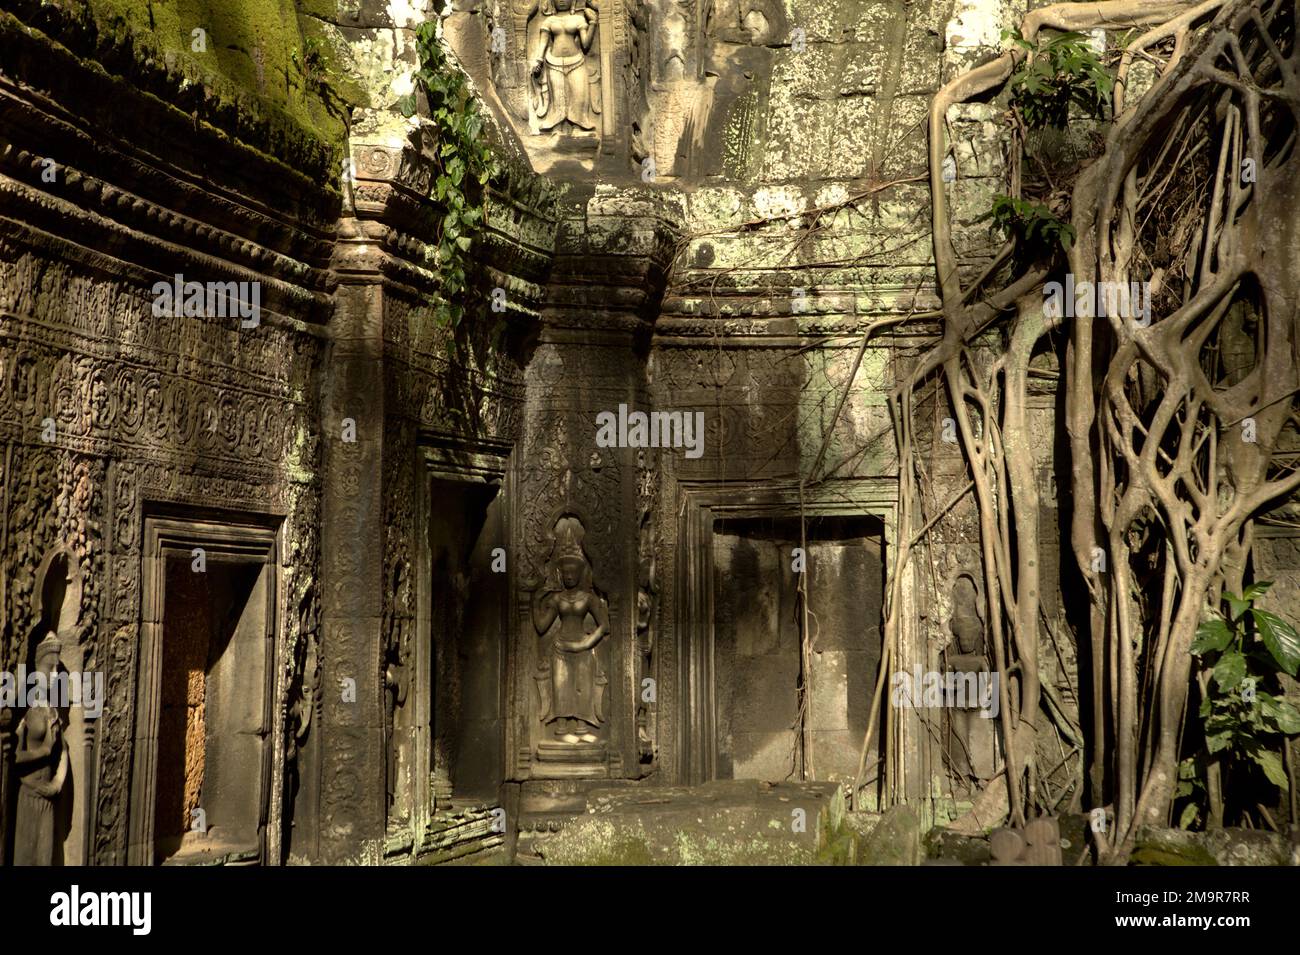 Eine Ecke von Ta Prohm, ein verlassenes antikes Kloster und Tempel in Siem Reap, Kambodscha. Stockfoto